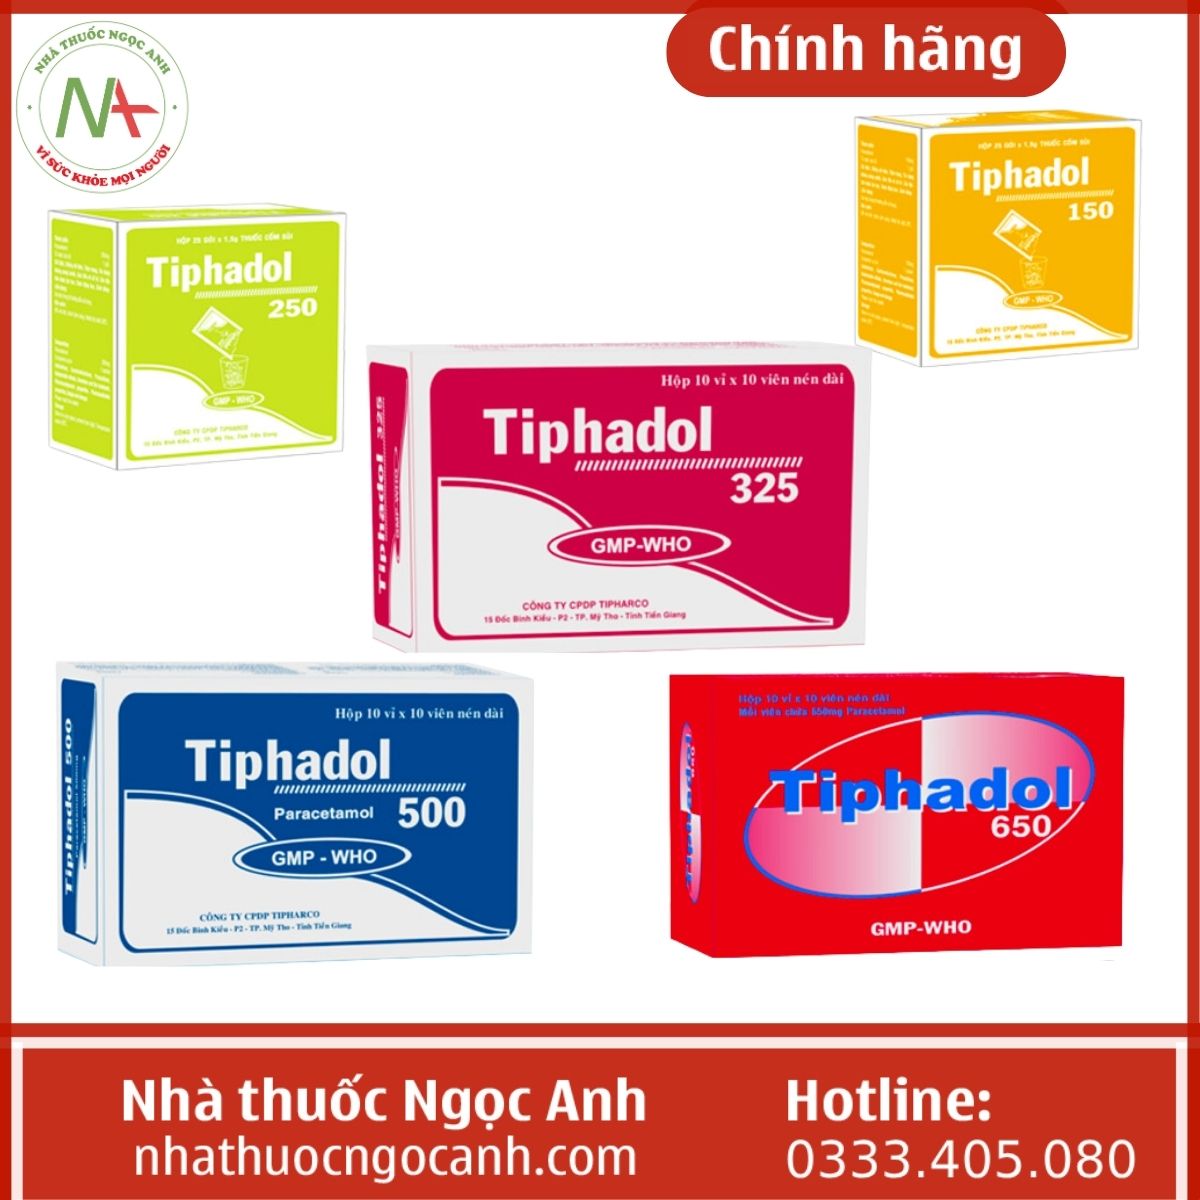 Các loại Tiphadol trên thị trường: Tiphadol 150, Tiphadol 250, Tiphadol 325, Tiphadol 500, Tiphadol 650